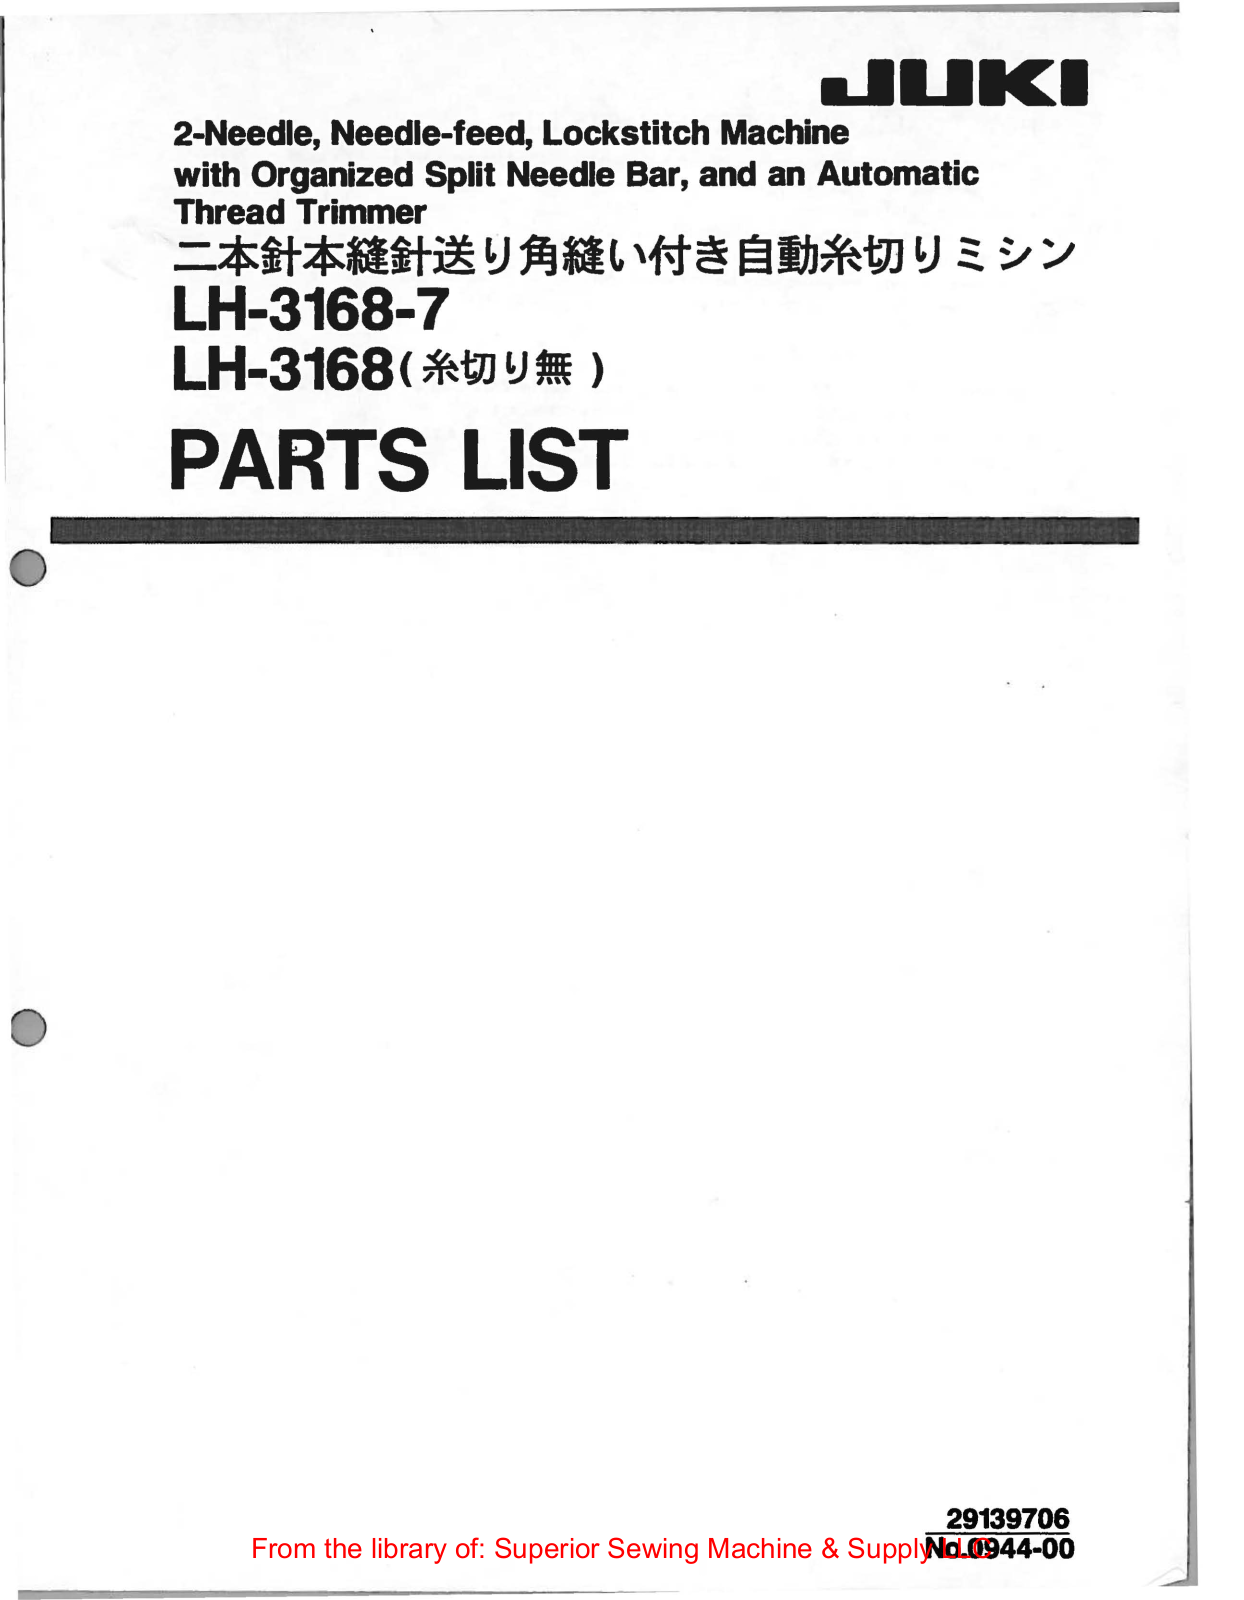 Juki LH-3168-7, LH-3168 Manual